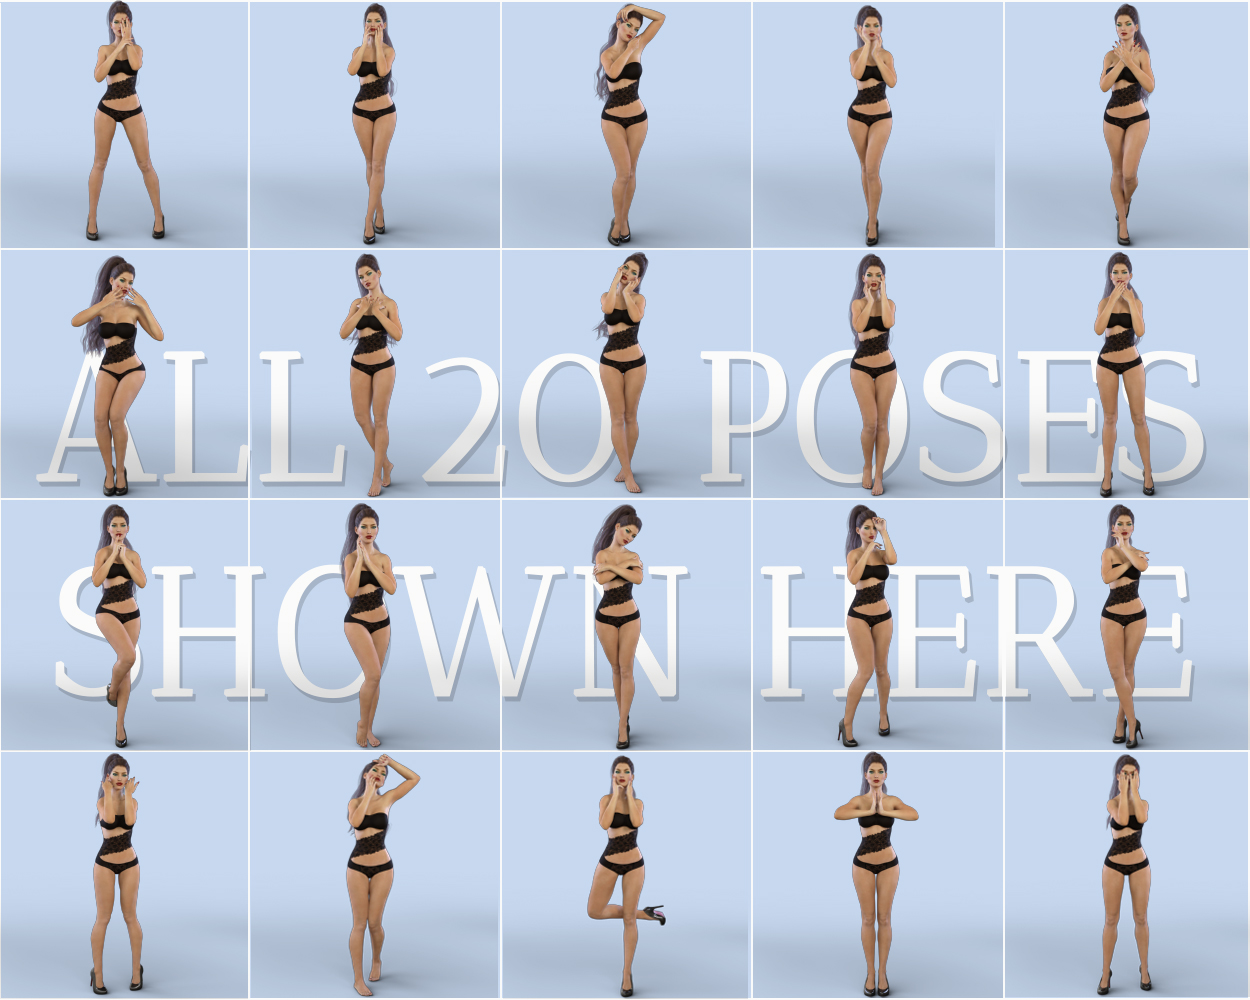 Z Feminine Touch - Pose Partials Compilation by: Zeddicuss, 3D Models by Daz 3D